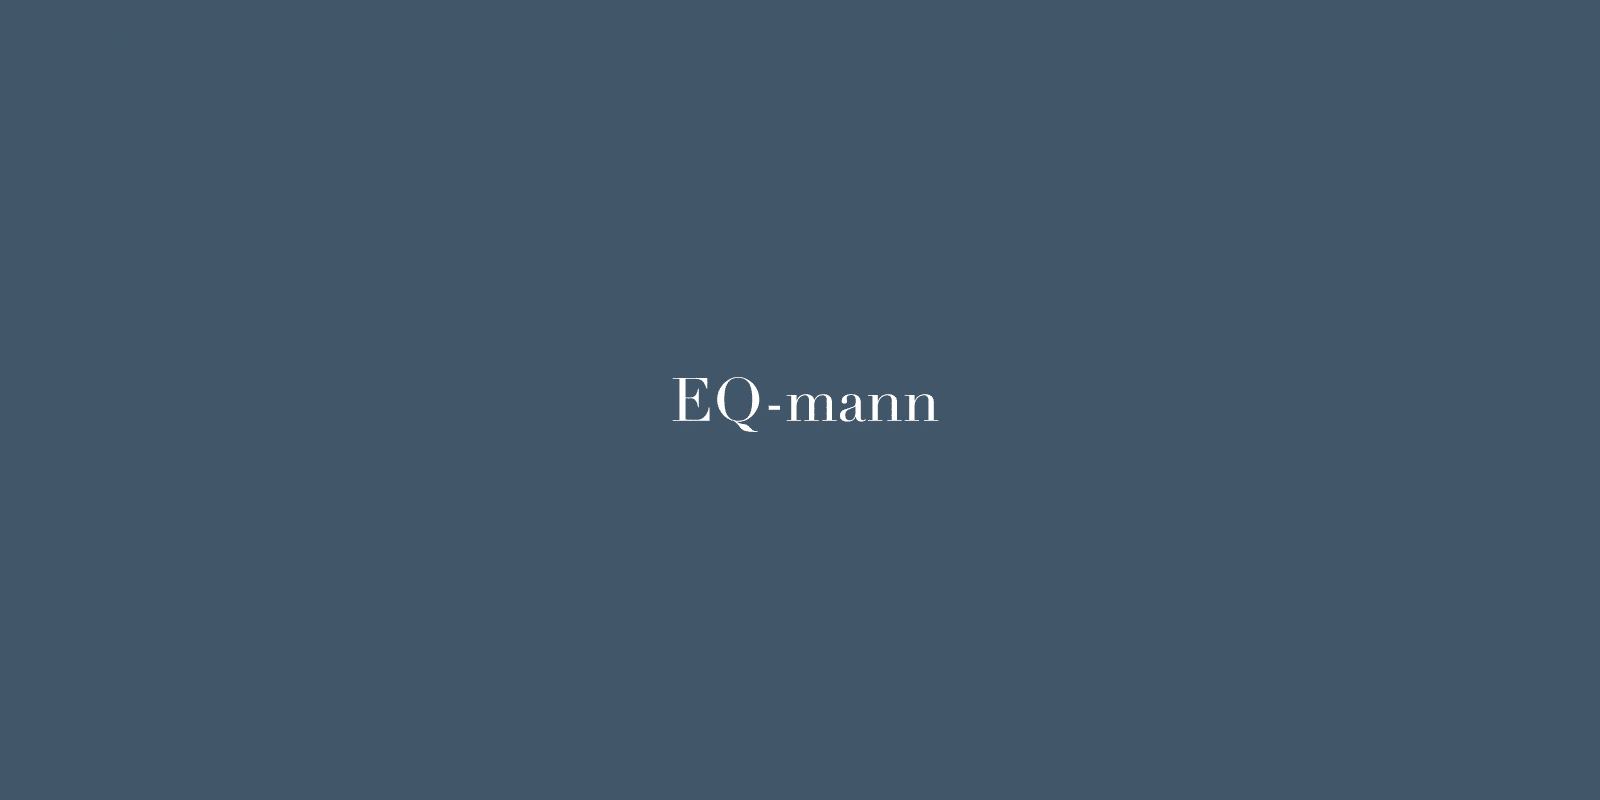 Blå banner med tekst EQ-mann